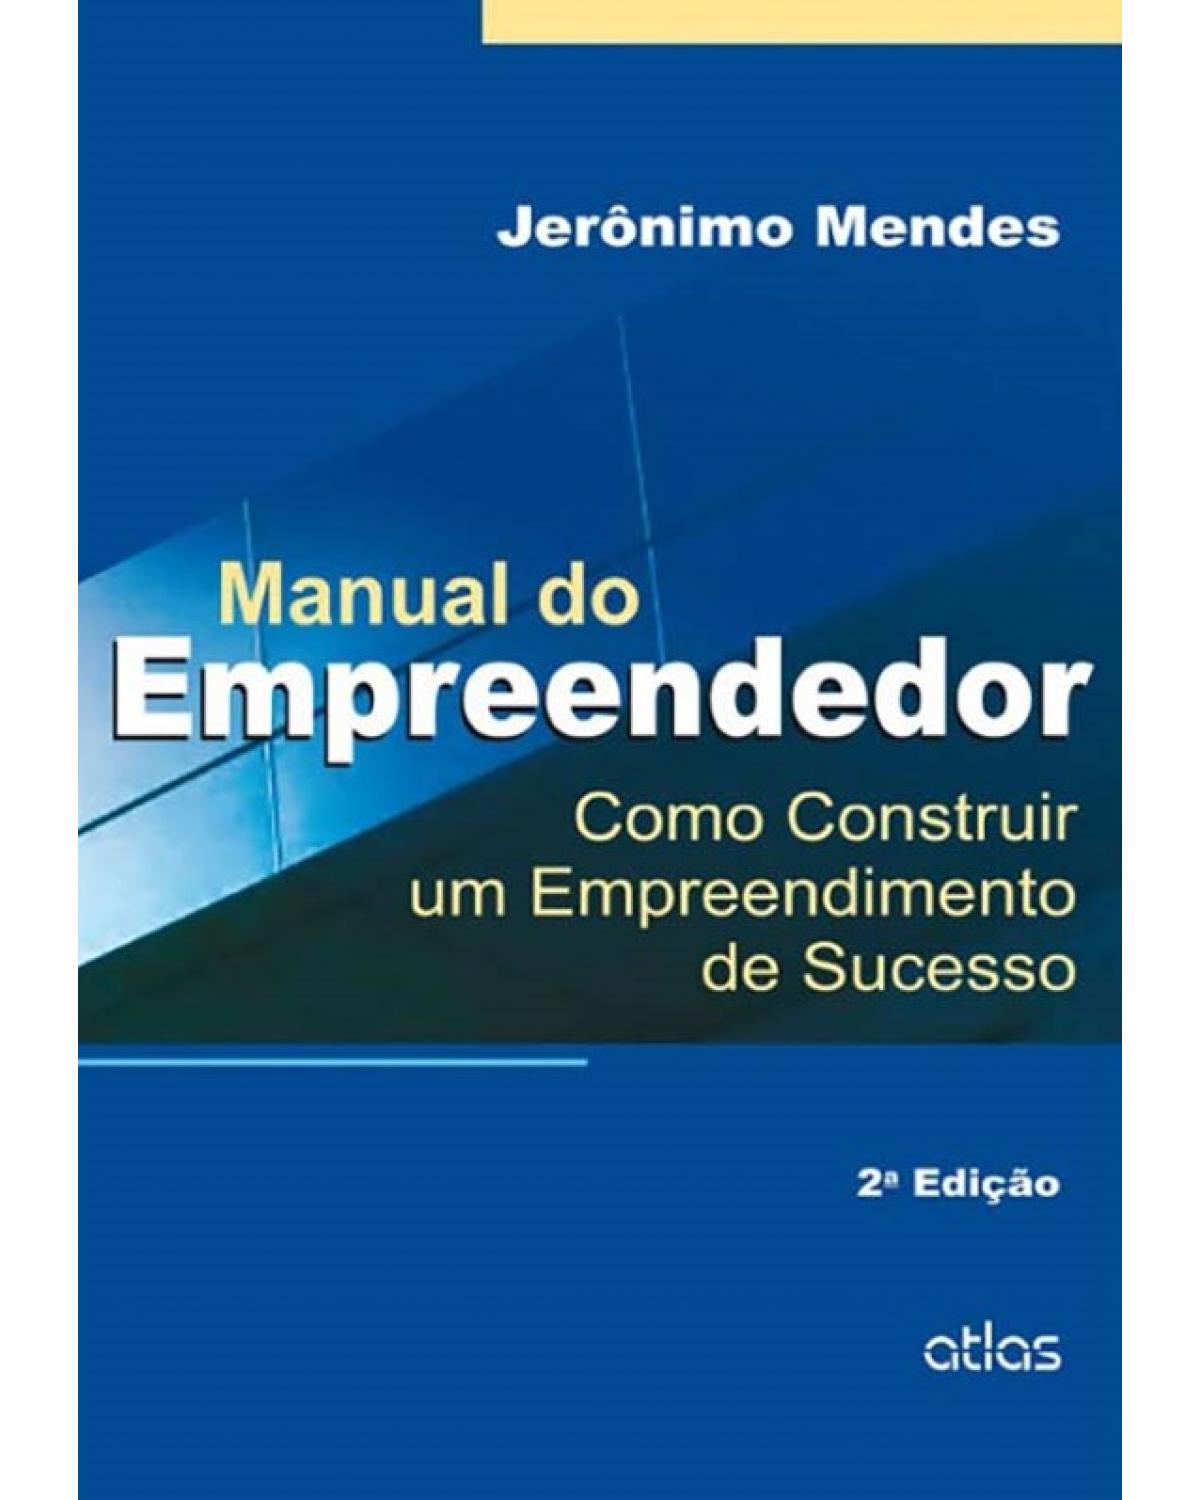 Manual do empreendedor - Como construir um empreendimento de sucesso - 2ª Edição | 2015